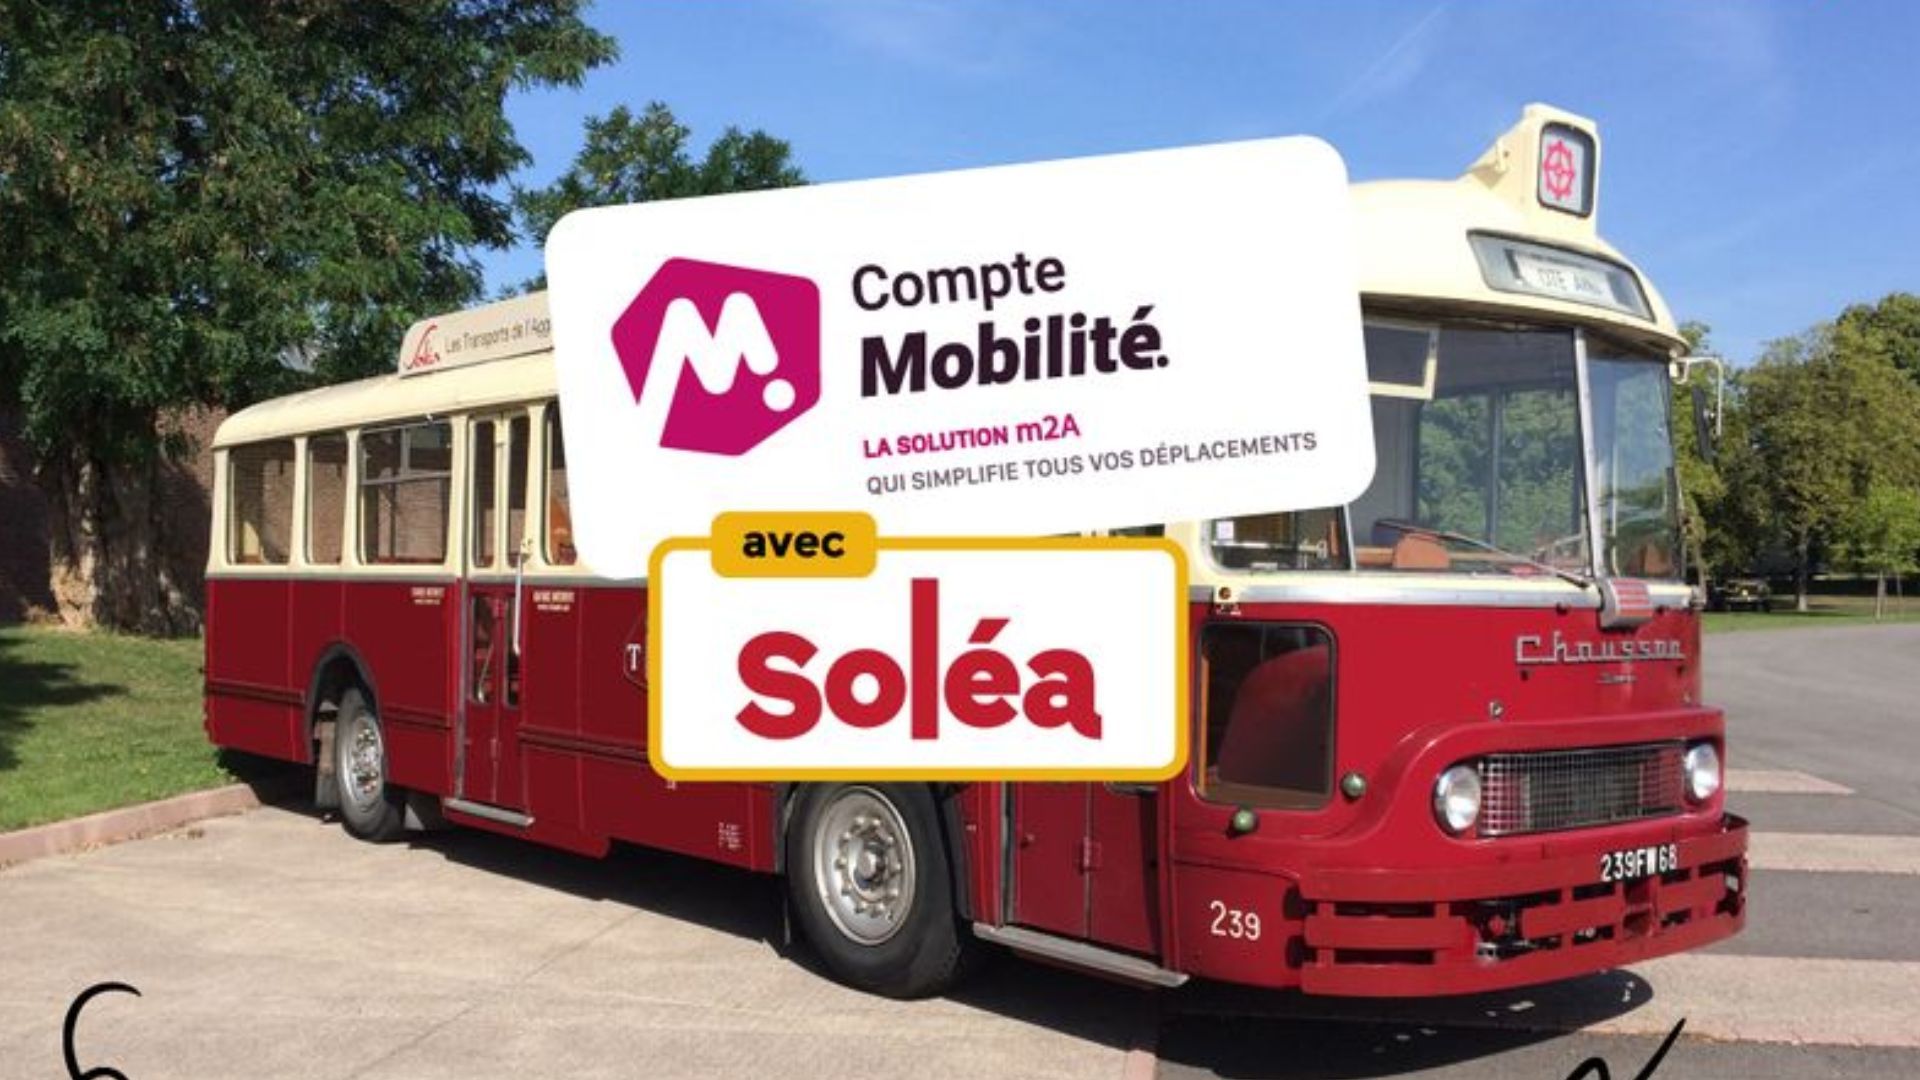 Rencontre des équipes Soléa à bord du bus Chausson à Mulhouse